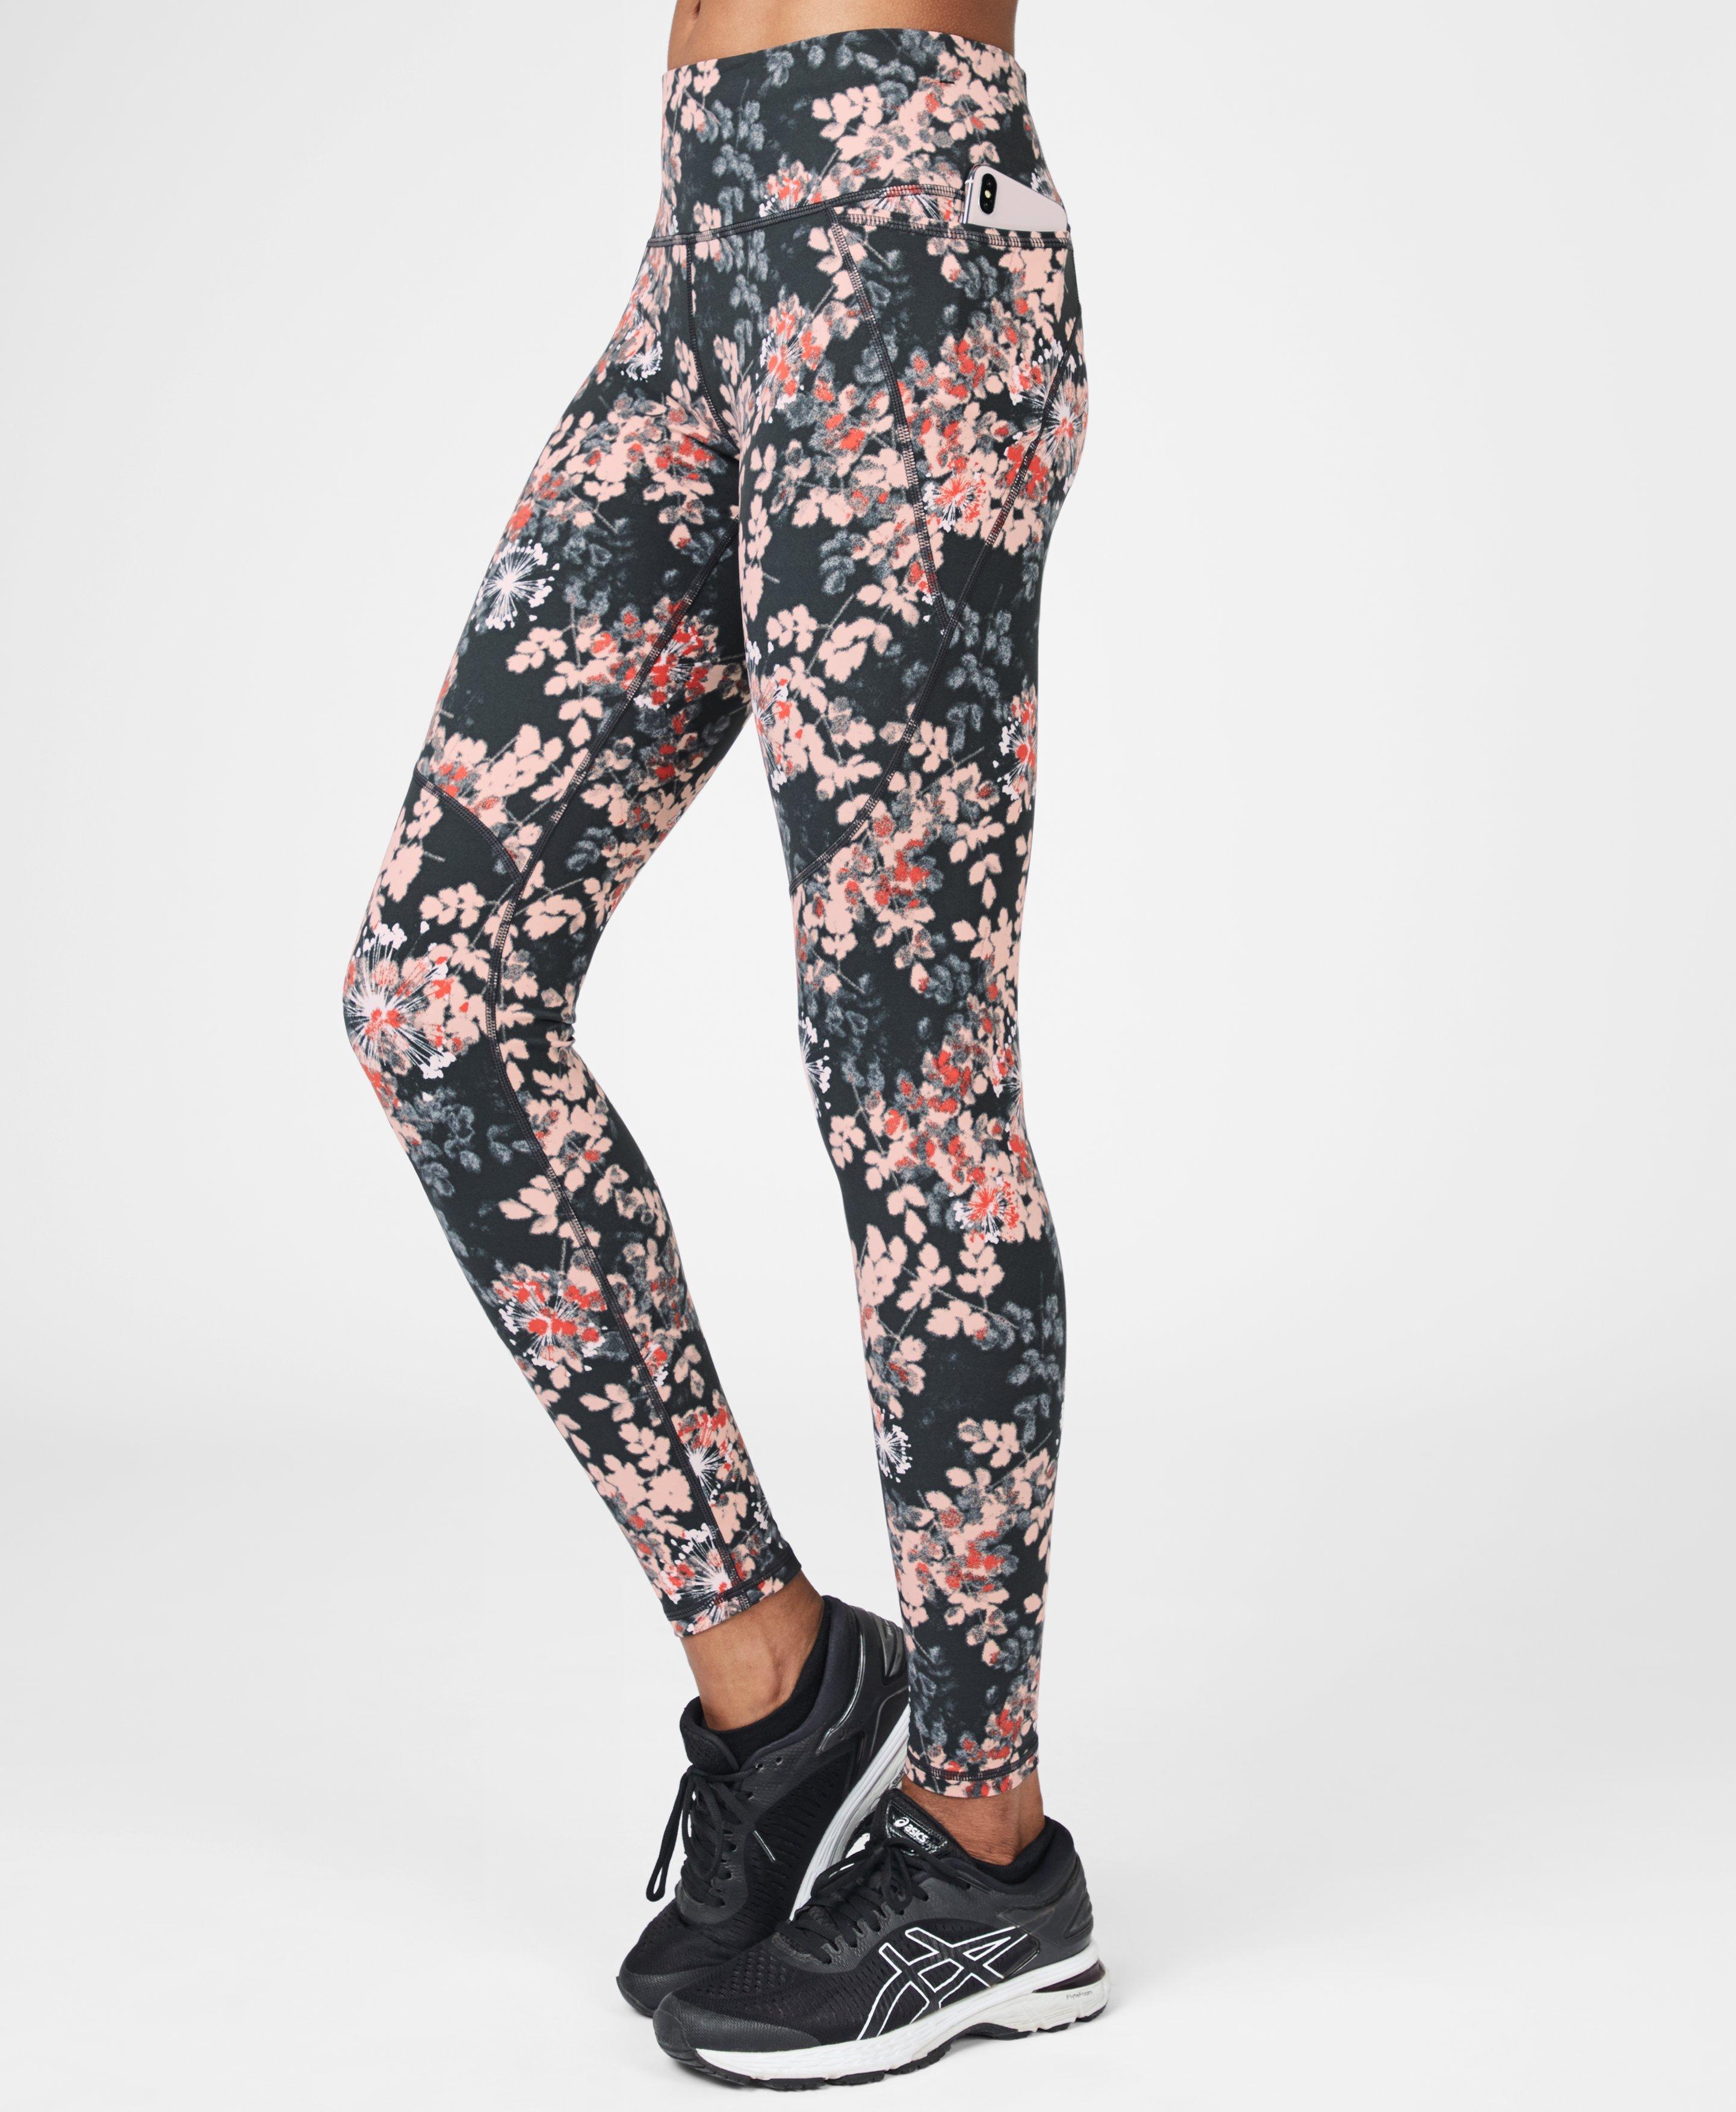 floral workout pants